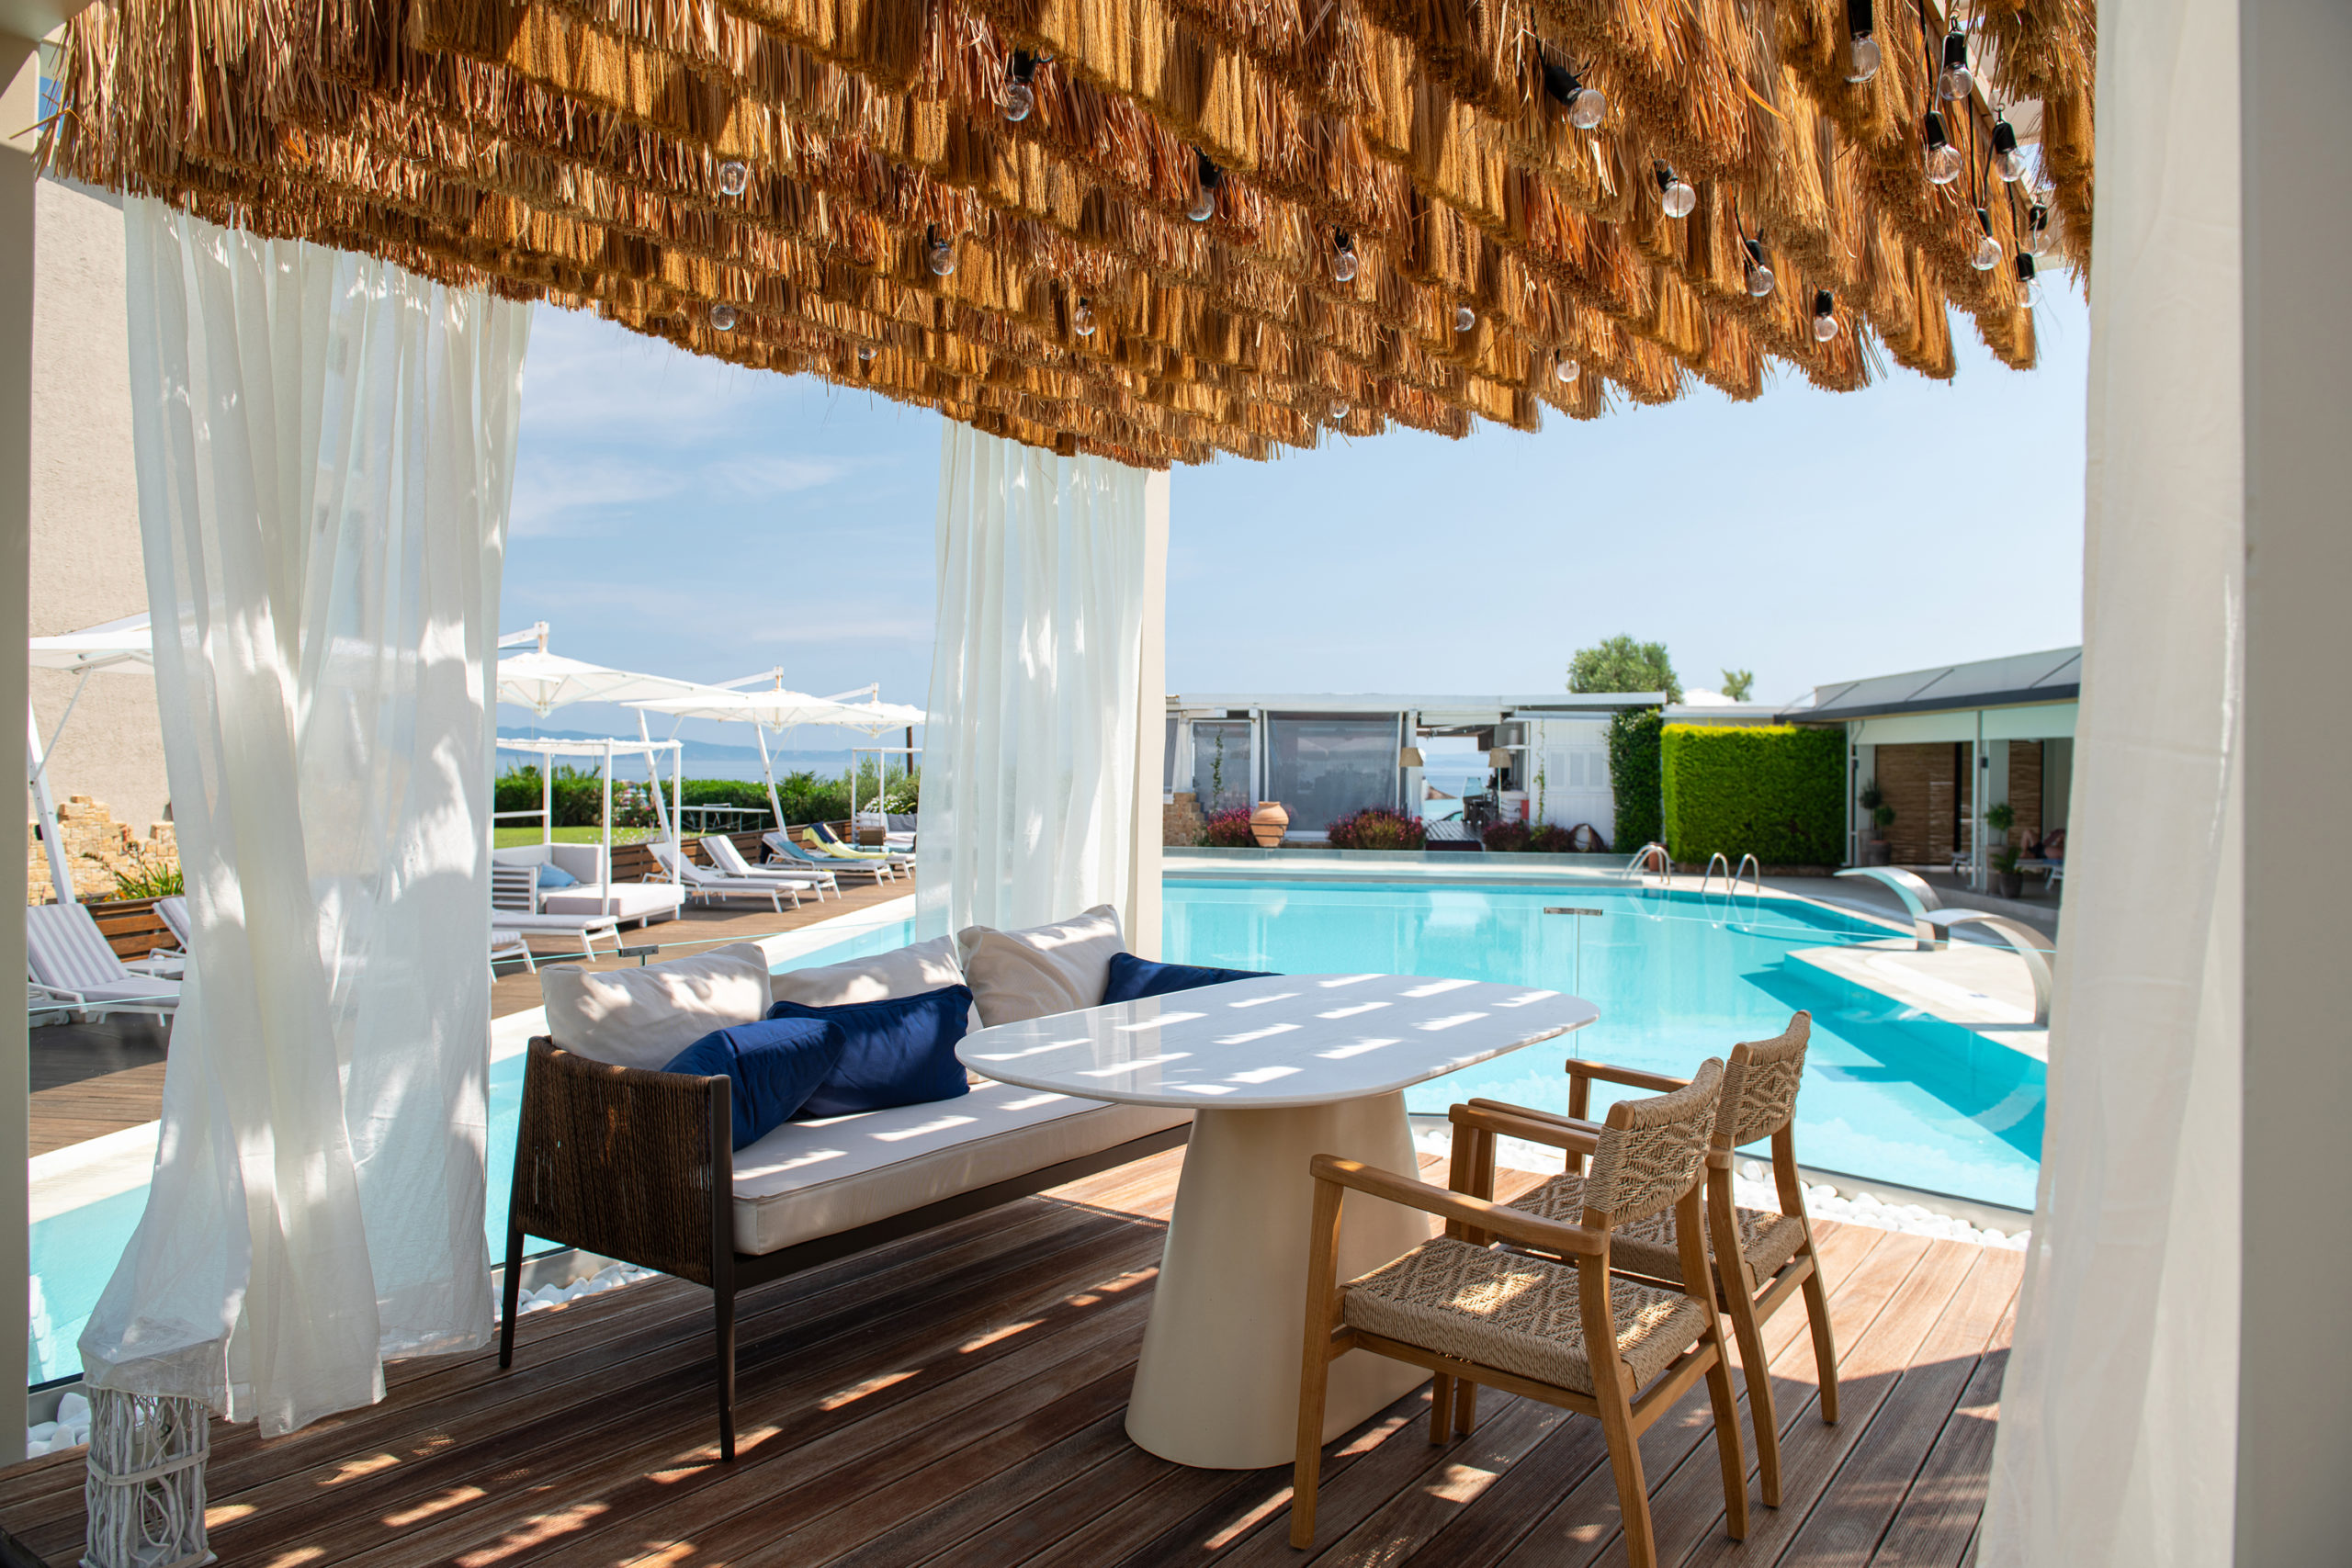 Vue panoramique sur la piscine extérieure de l'hôtel Antigoni Seaside Resort situé à Sithonia à Chalcidique dans la Grèce du nord